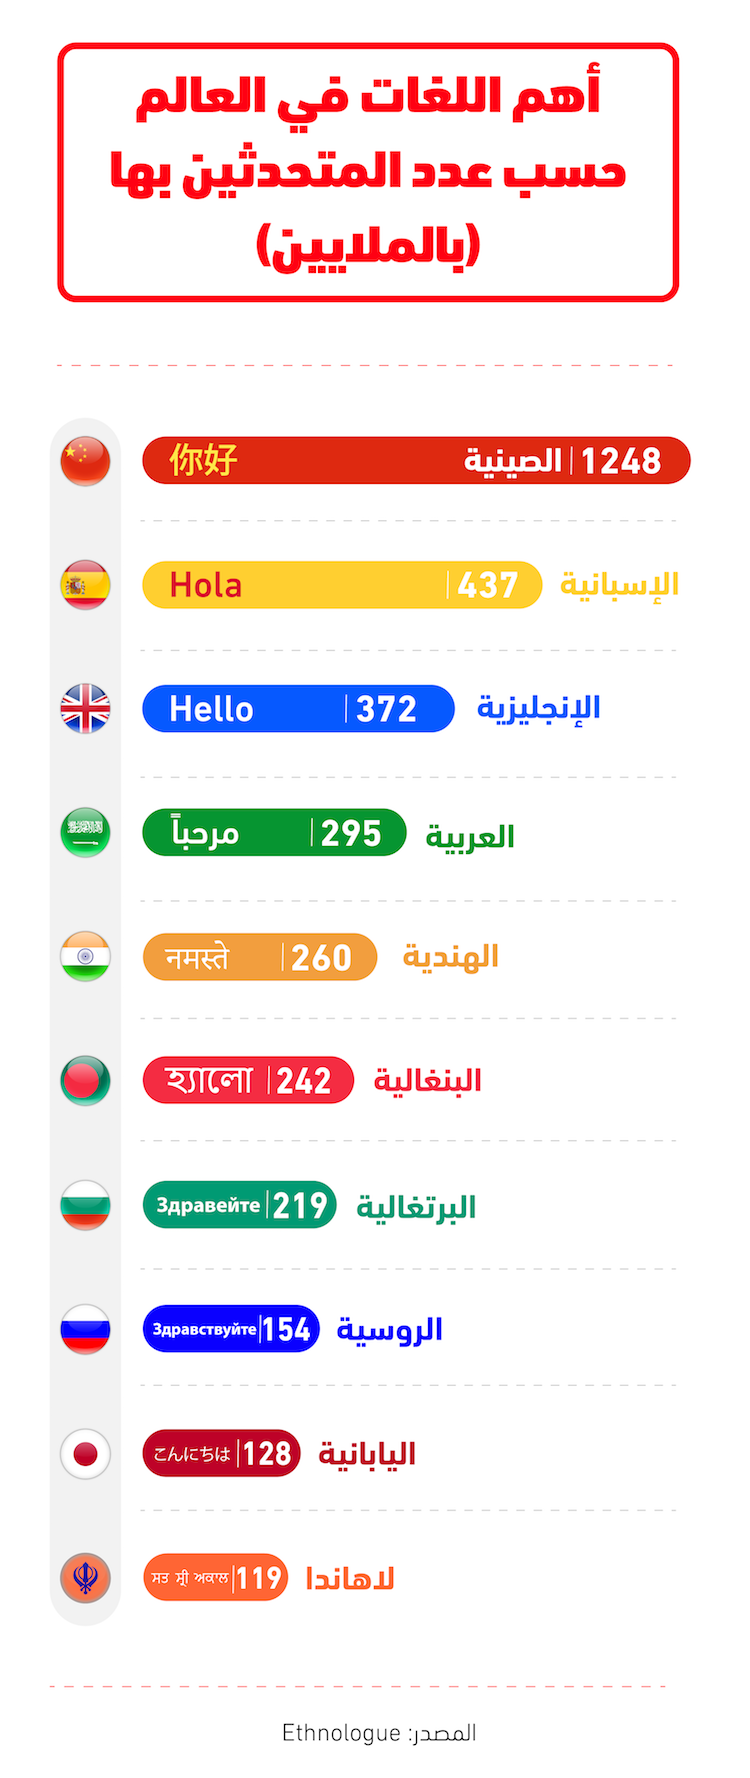 أهم 10 لغات في العالم حسب عدد المتحدثين بها